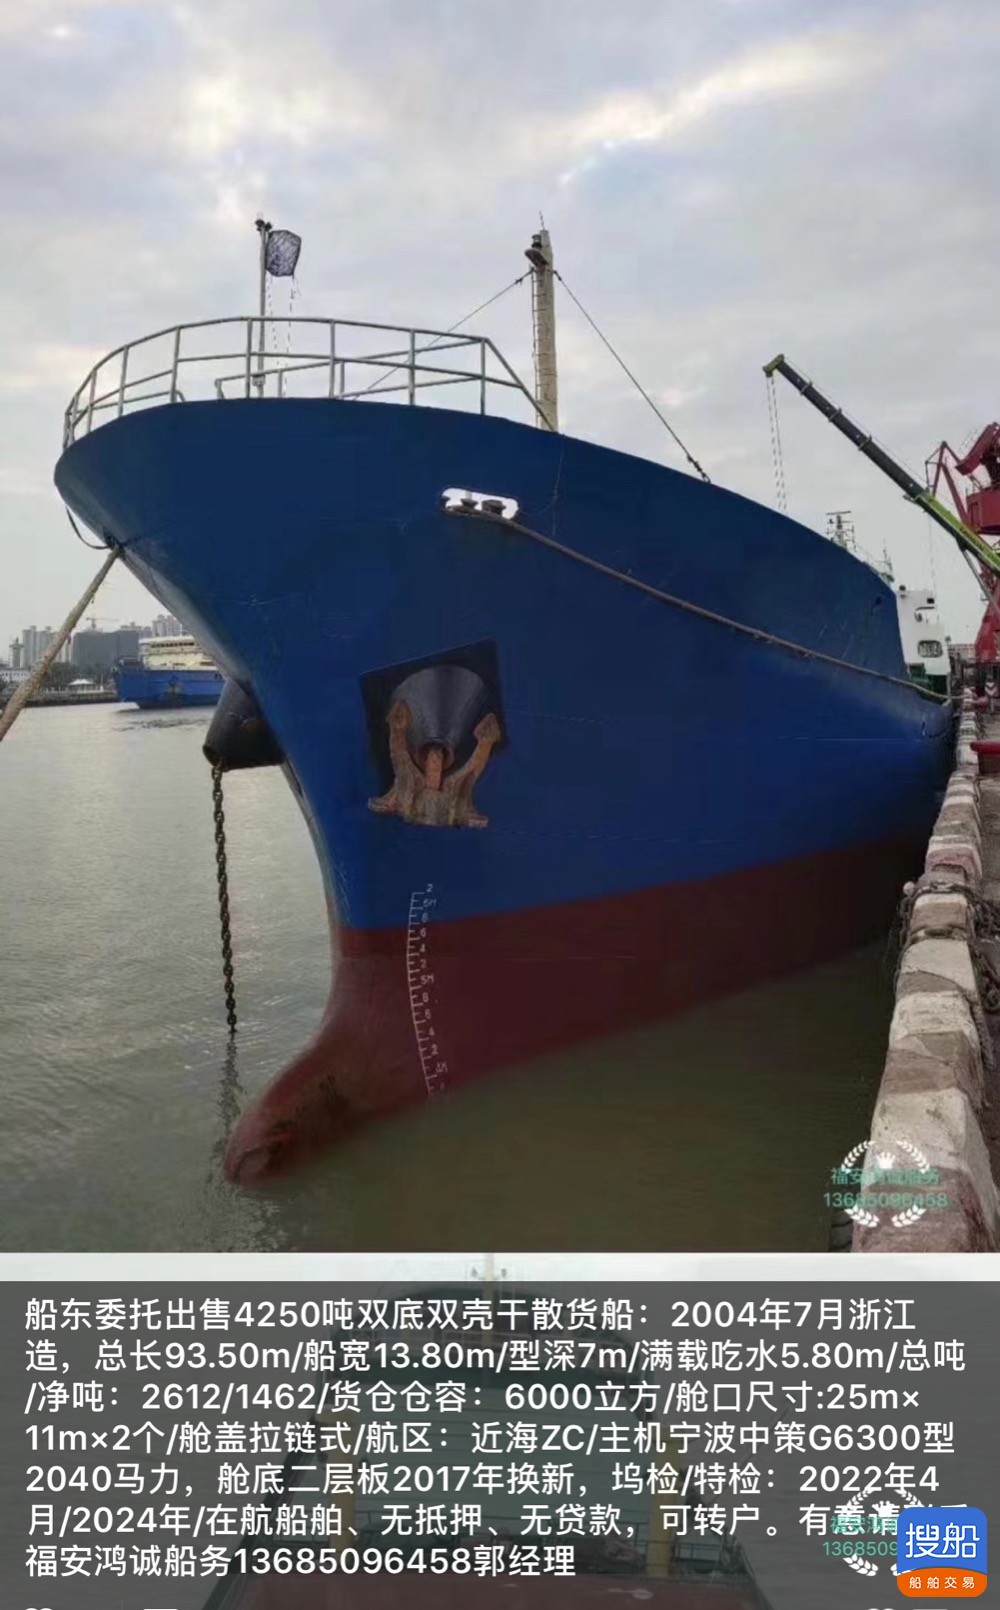 出售4250吨双壳货船